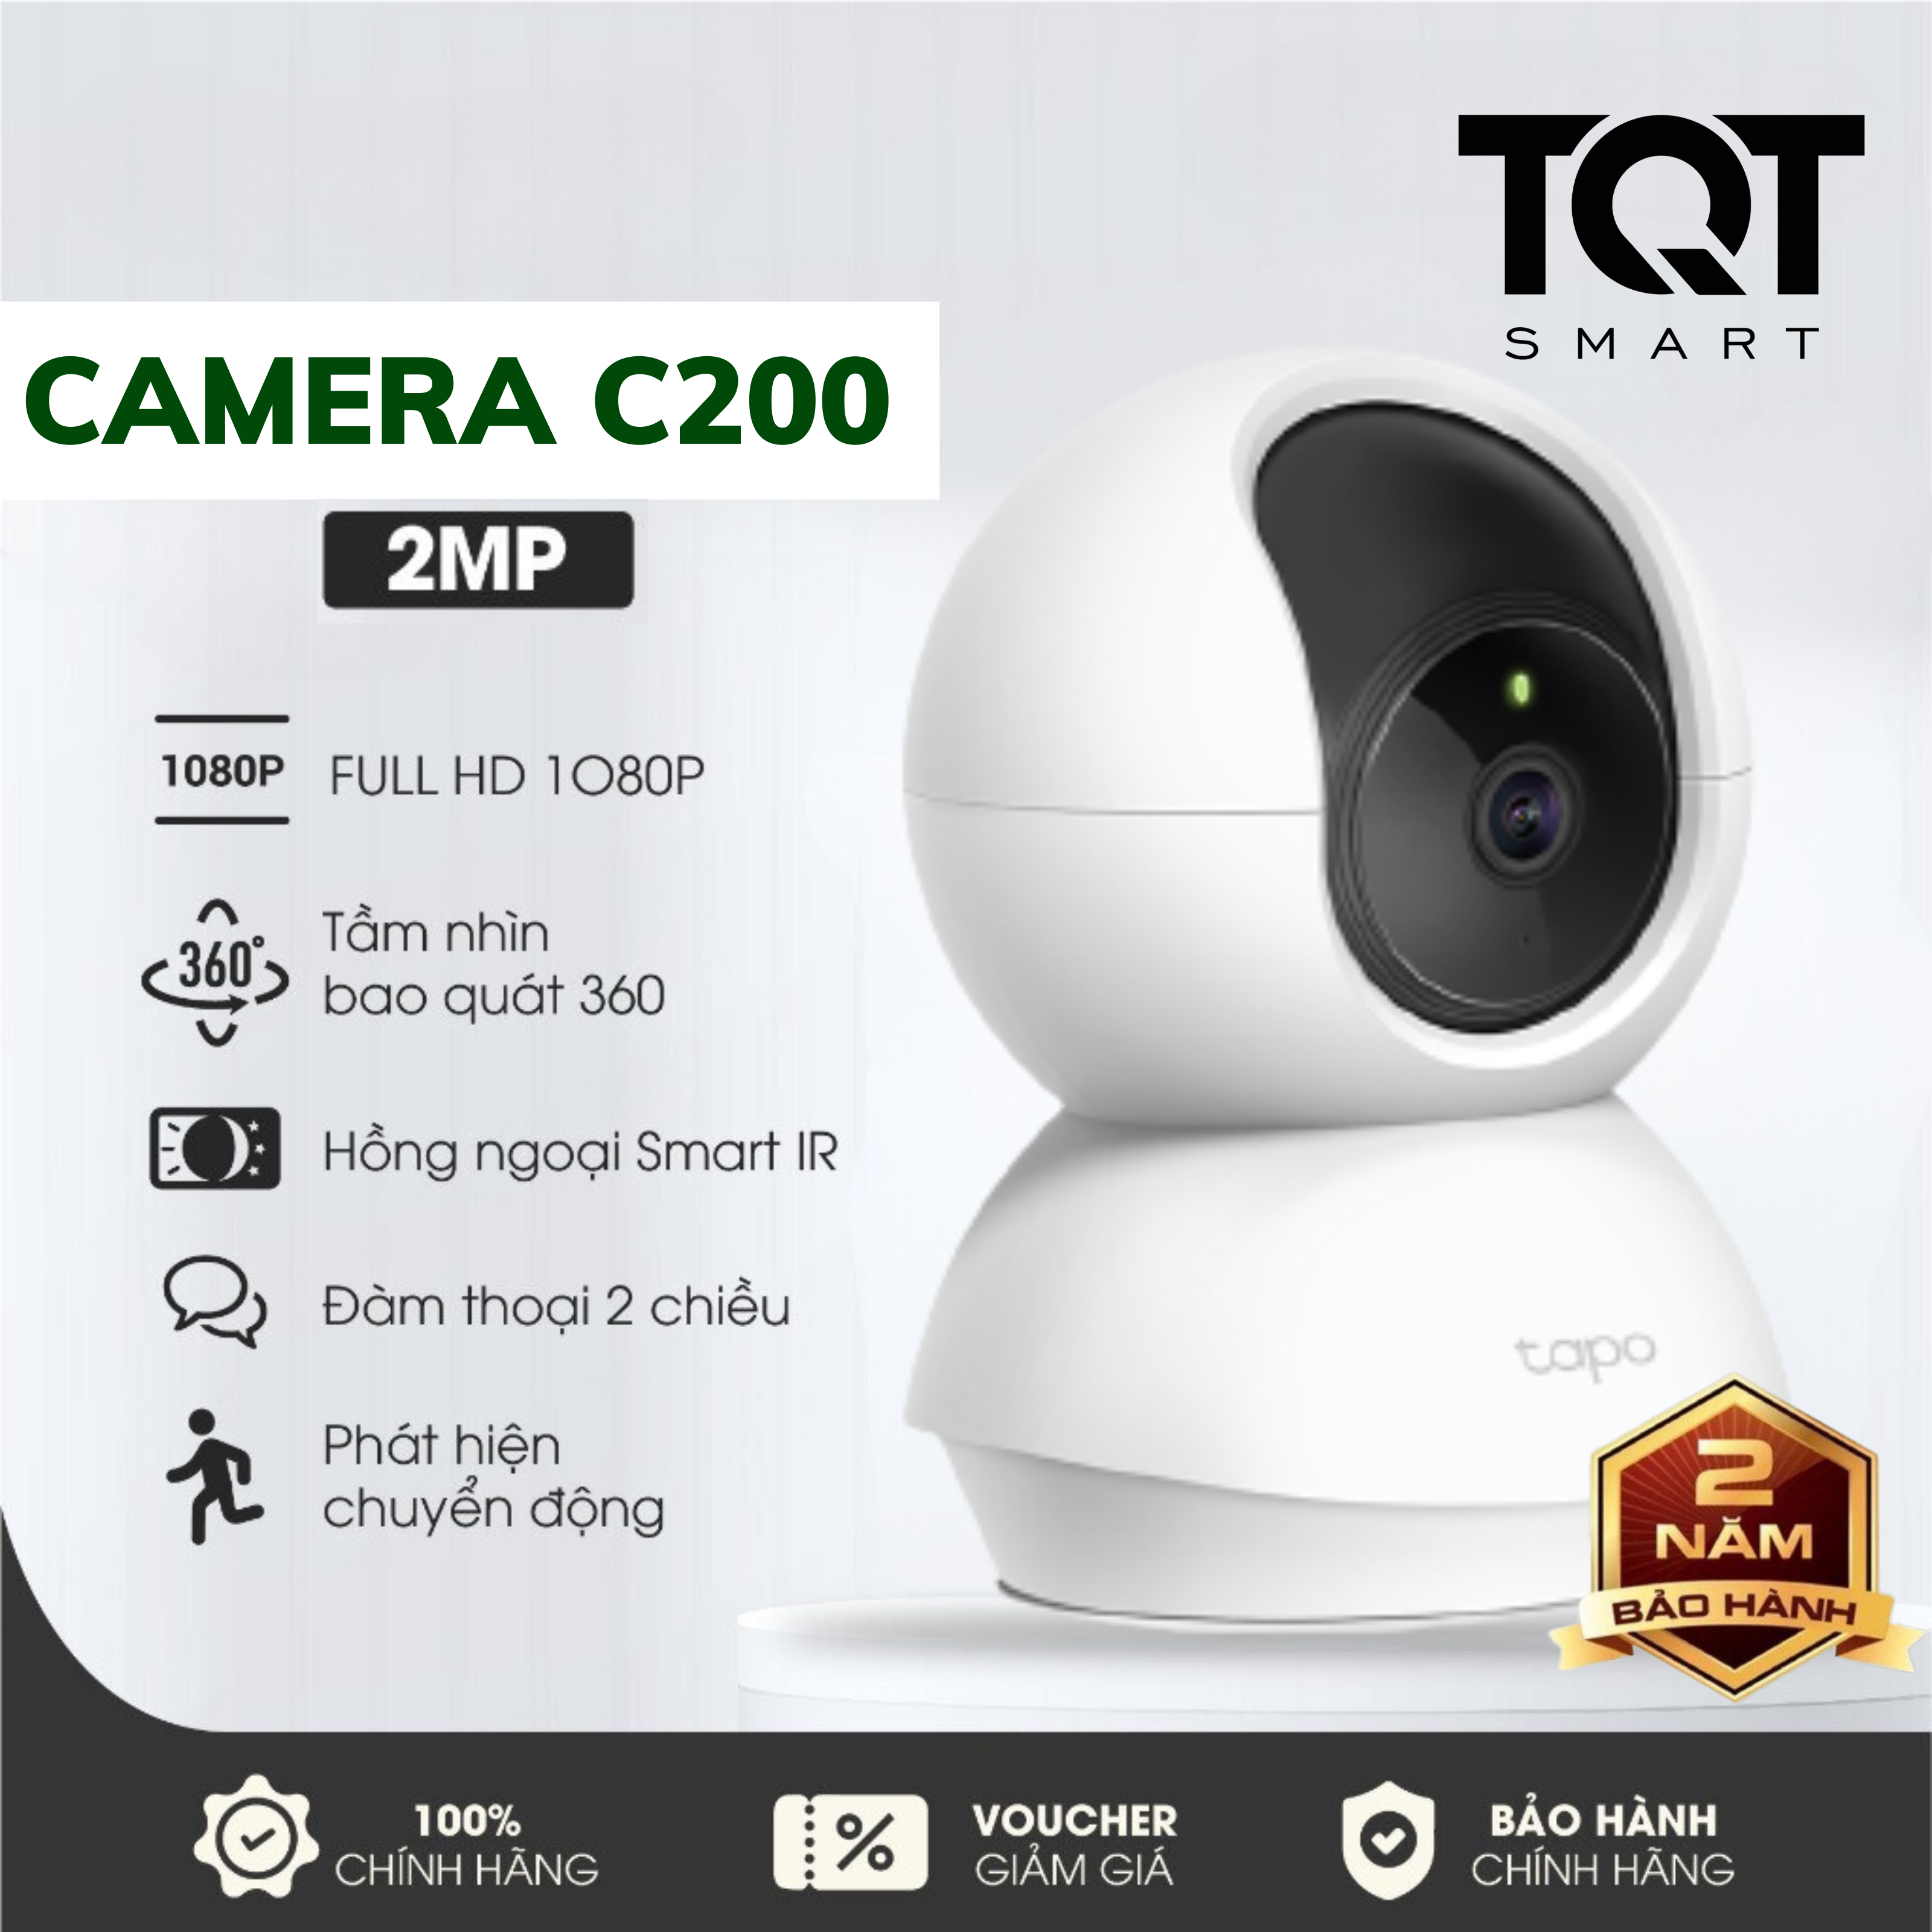 Camera Wifi C200 Full HD 1080P - Độ Phân Giải 2MP - Xoay 360 Độ